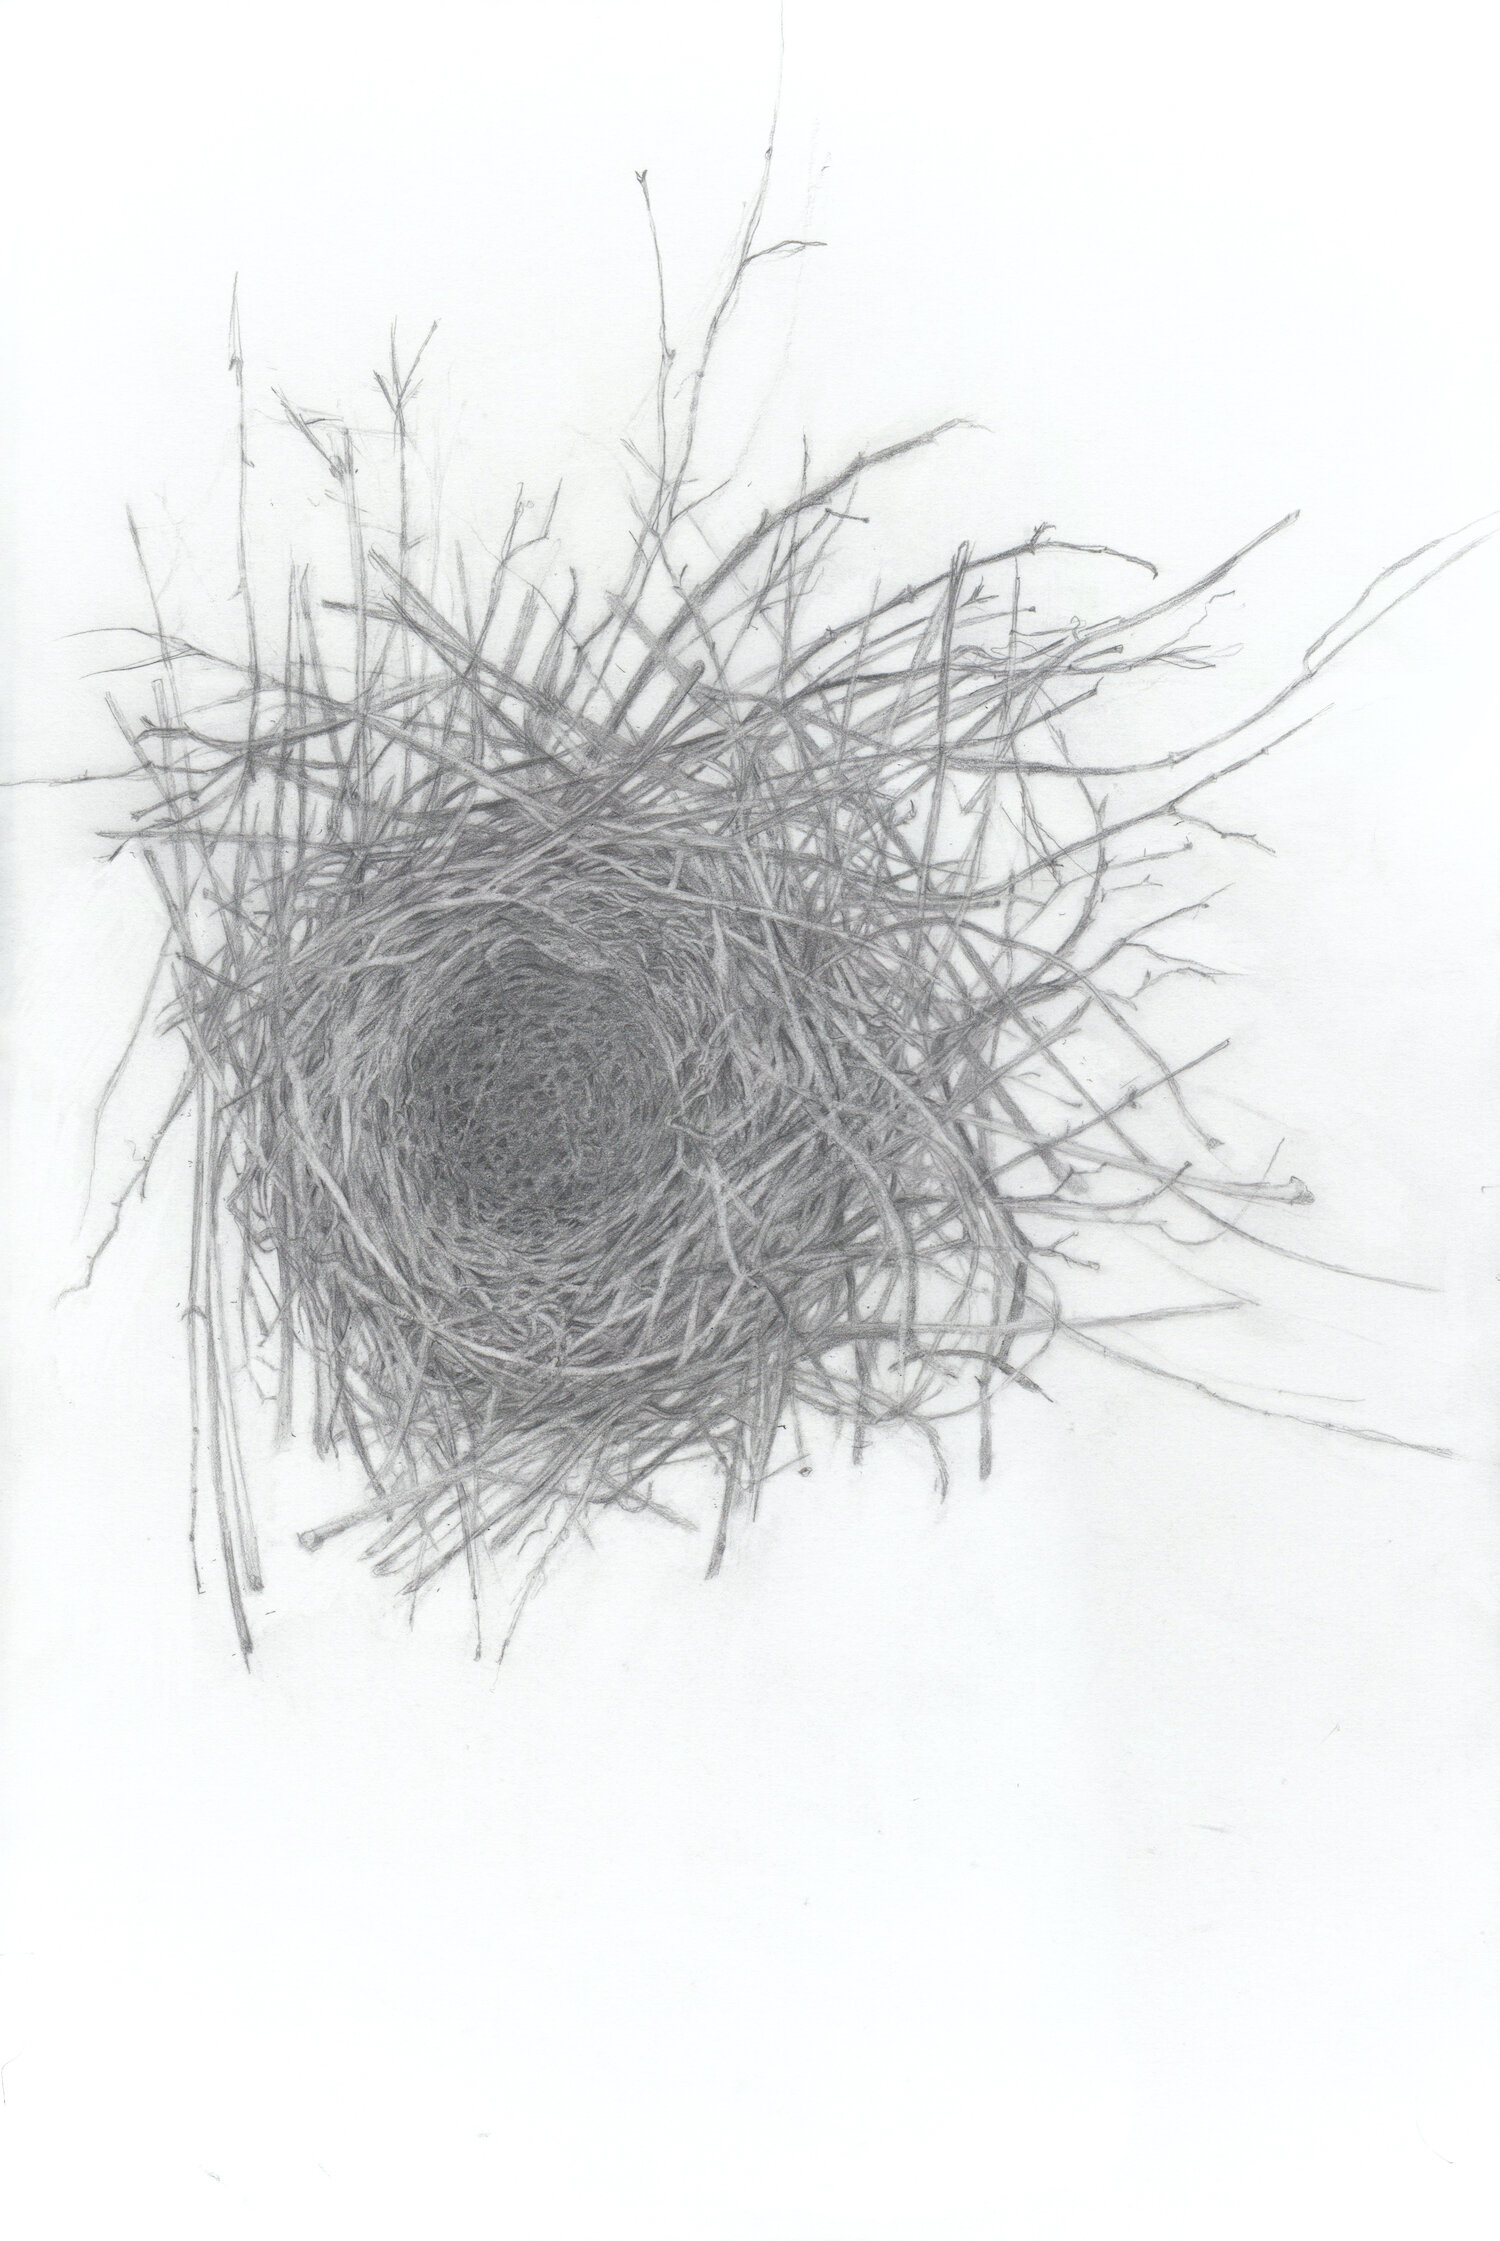 Karin's Nest (bluejay)